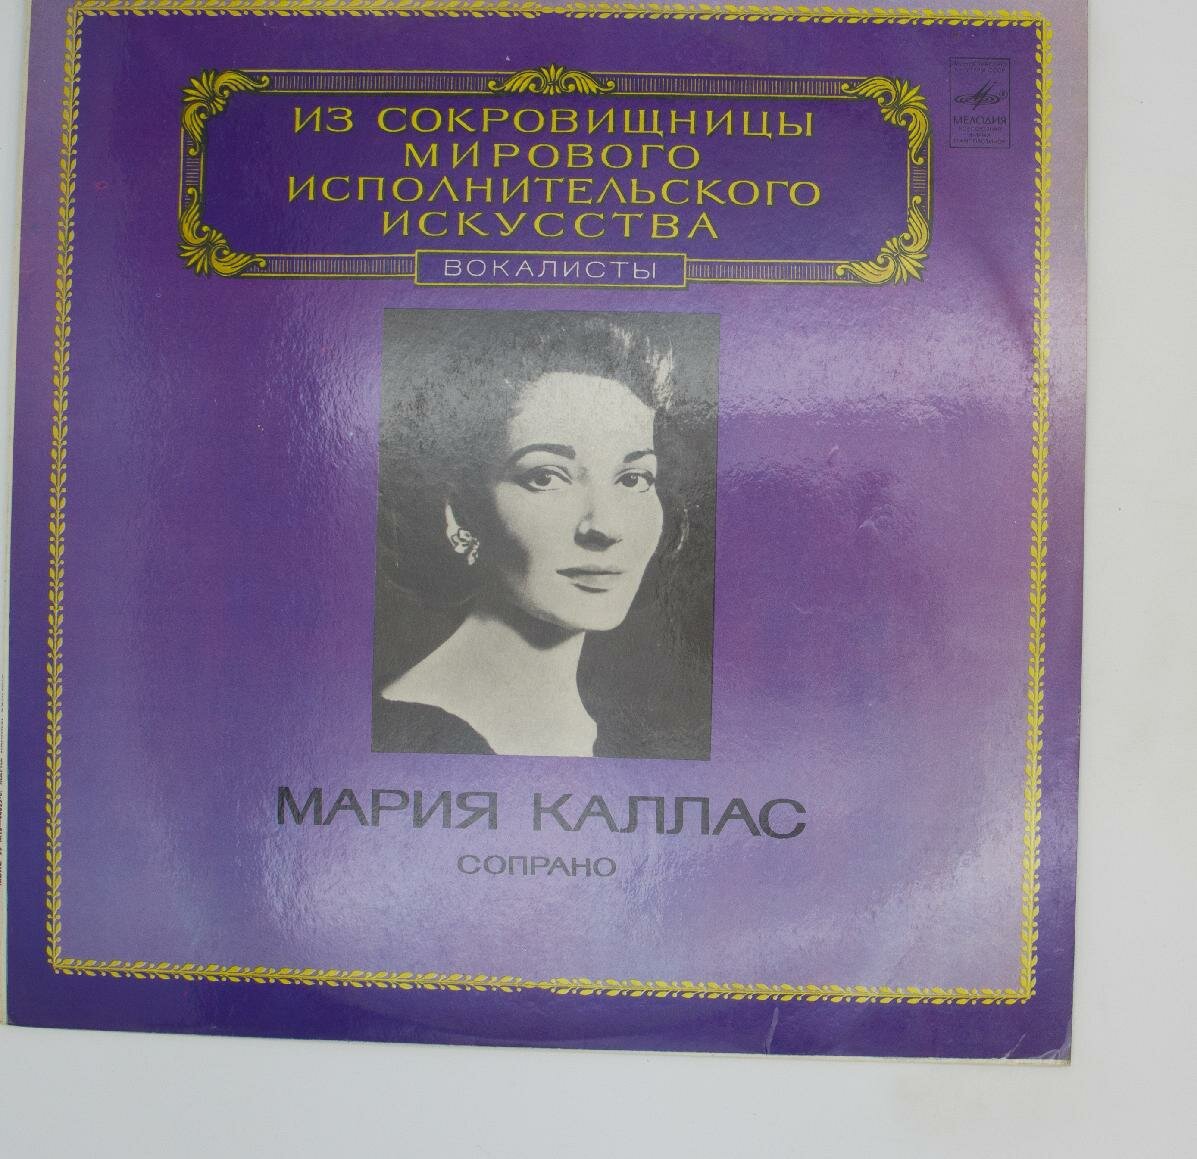 Виниловая пластинка Мария Каллас - Сопрано